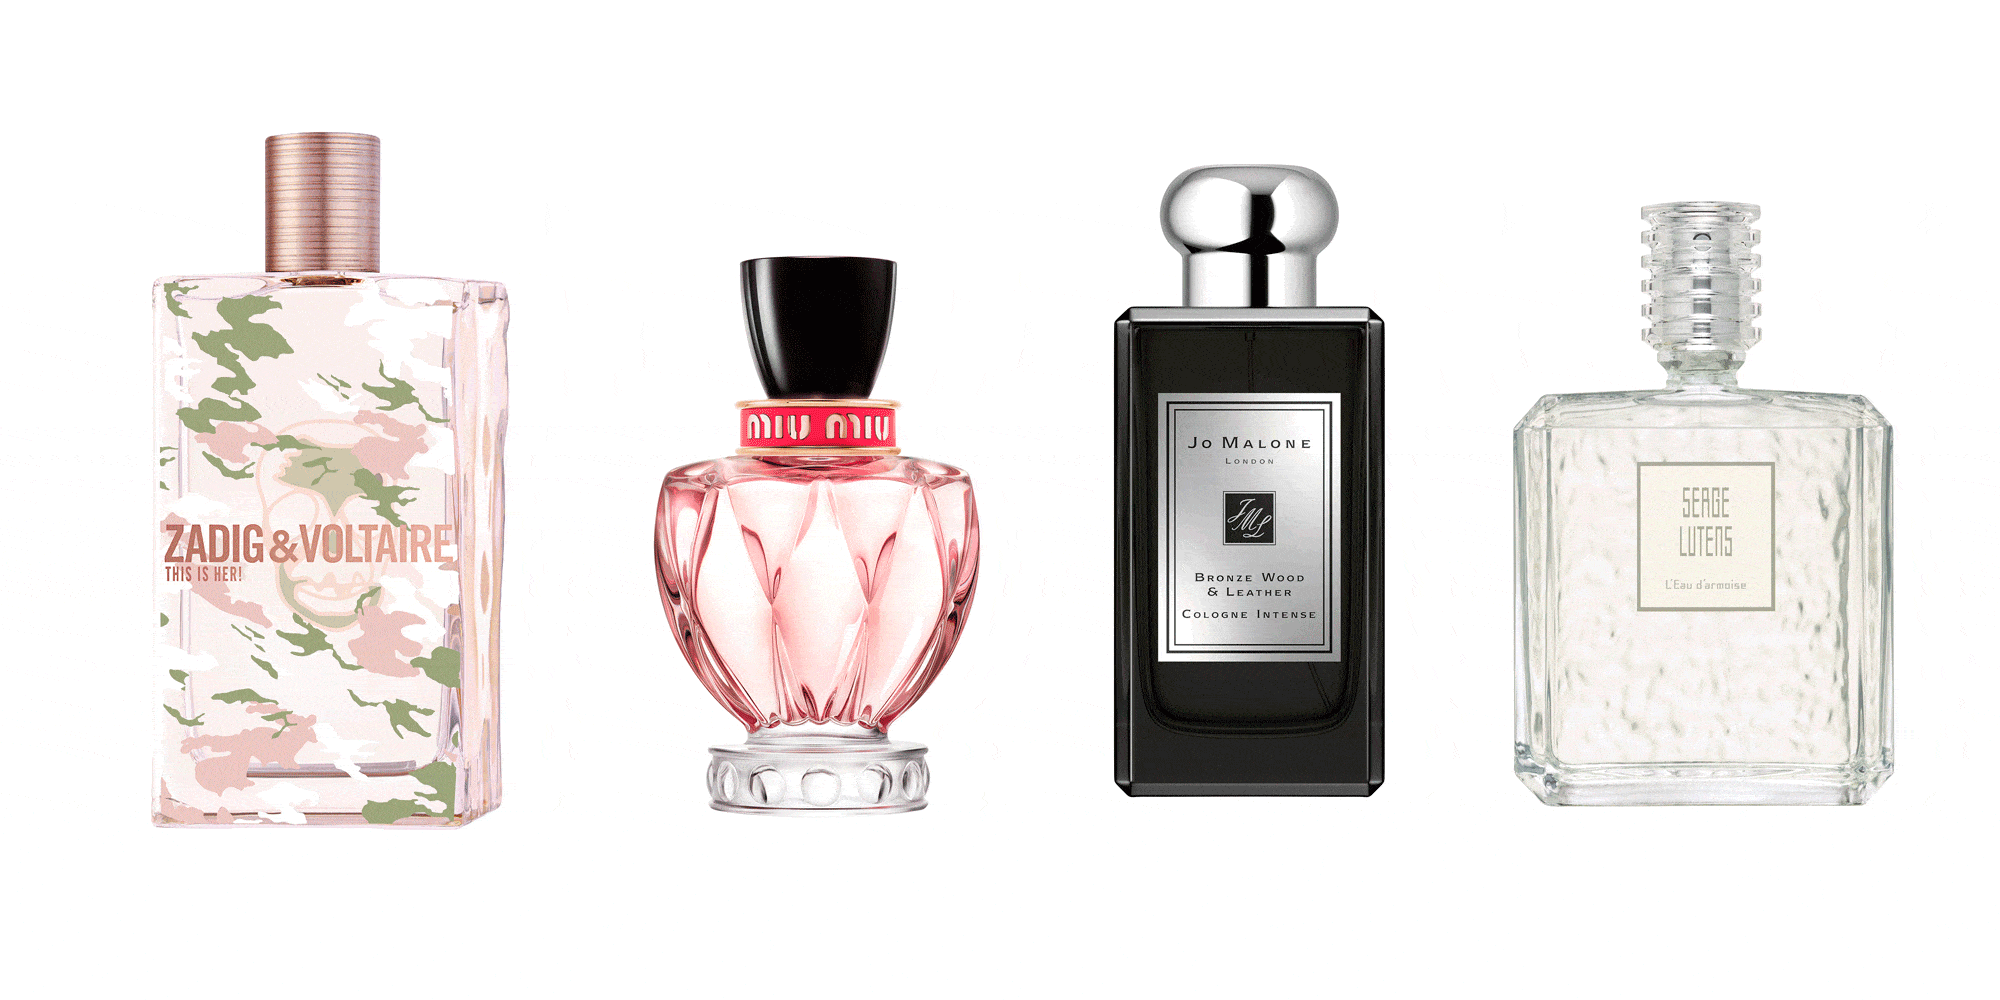 Soplar Tom Audreath Subordinar Las nuevas fragancias de 2019 - Los nuevos perfumes de 2019